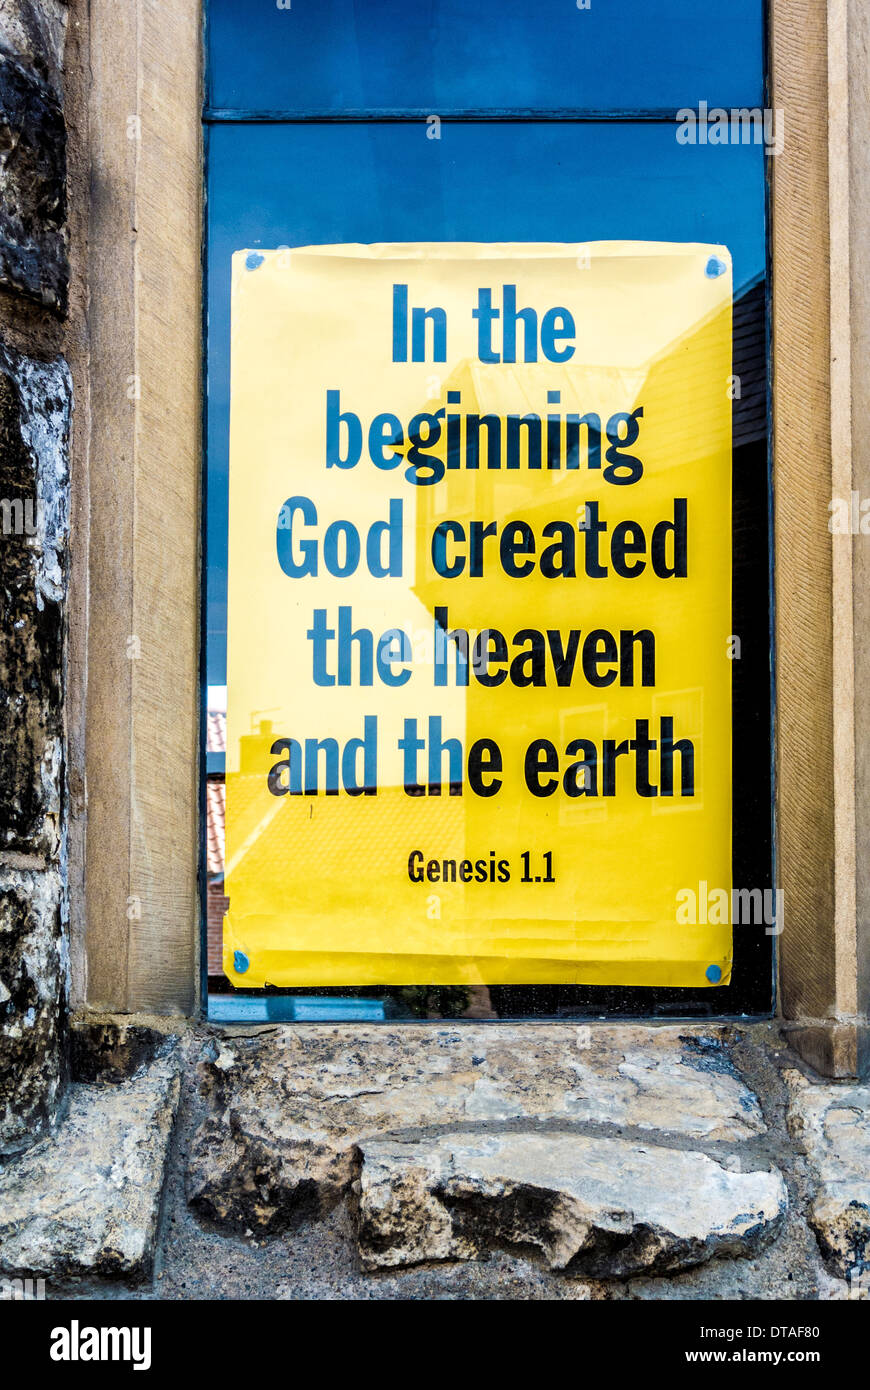 Segno giallo blu appeso in una finestra della chiesa - in principio Dio creò il cielo e la terra. Foto Stock